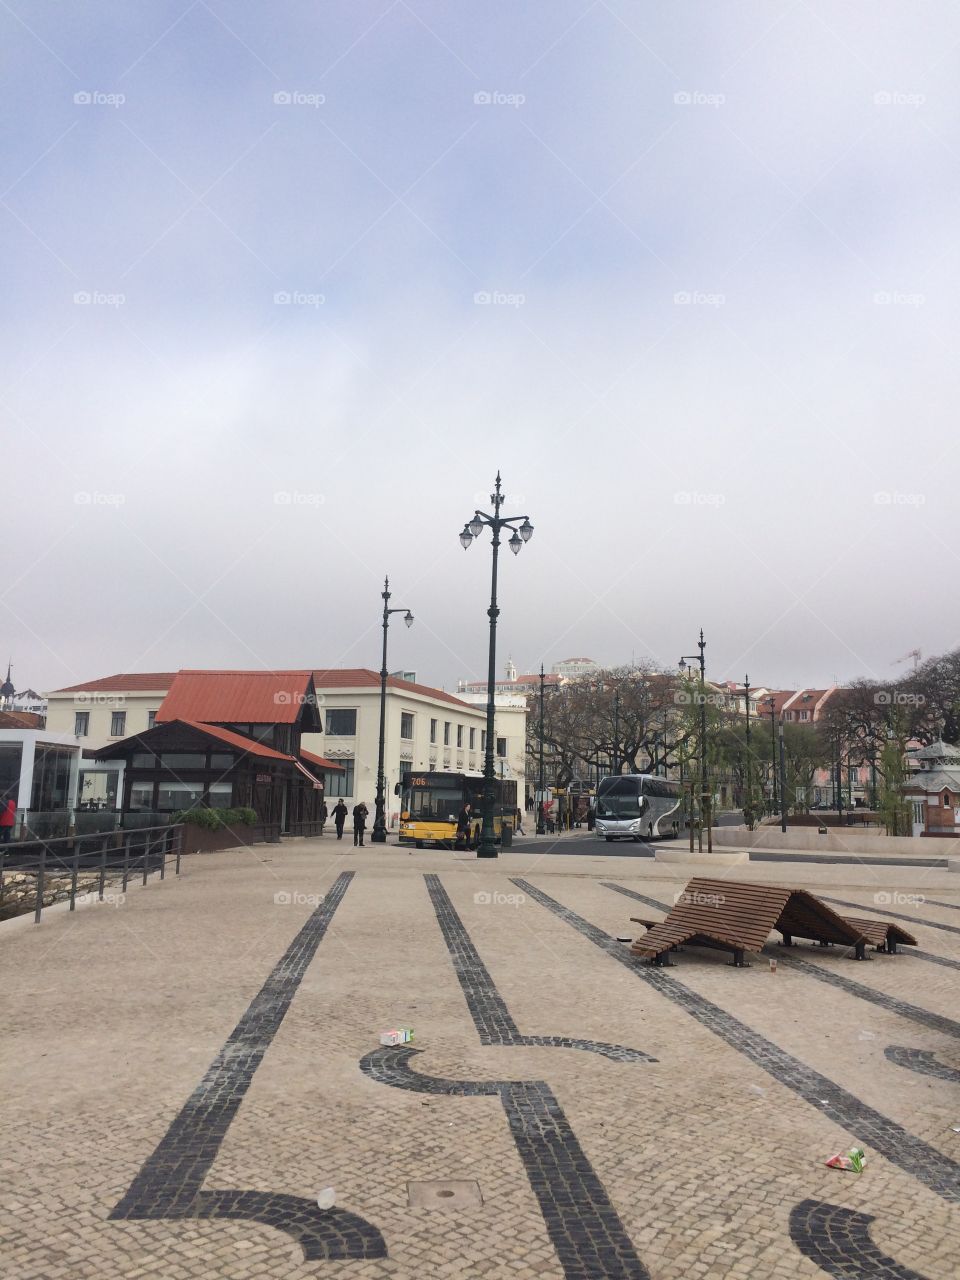 Cais Sodre Lisbon Portugal 